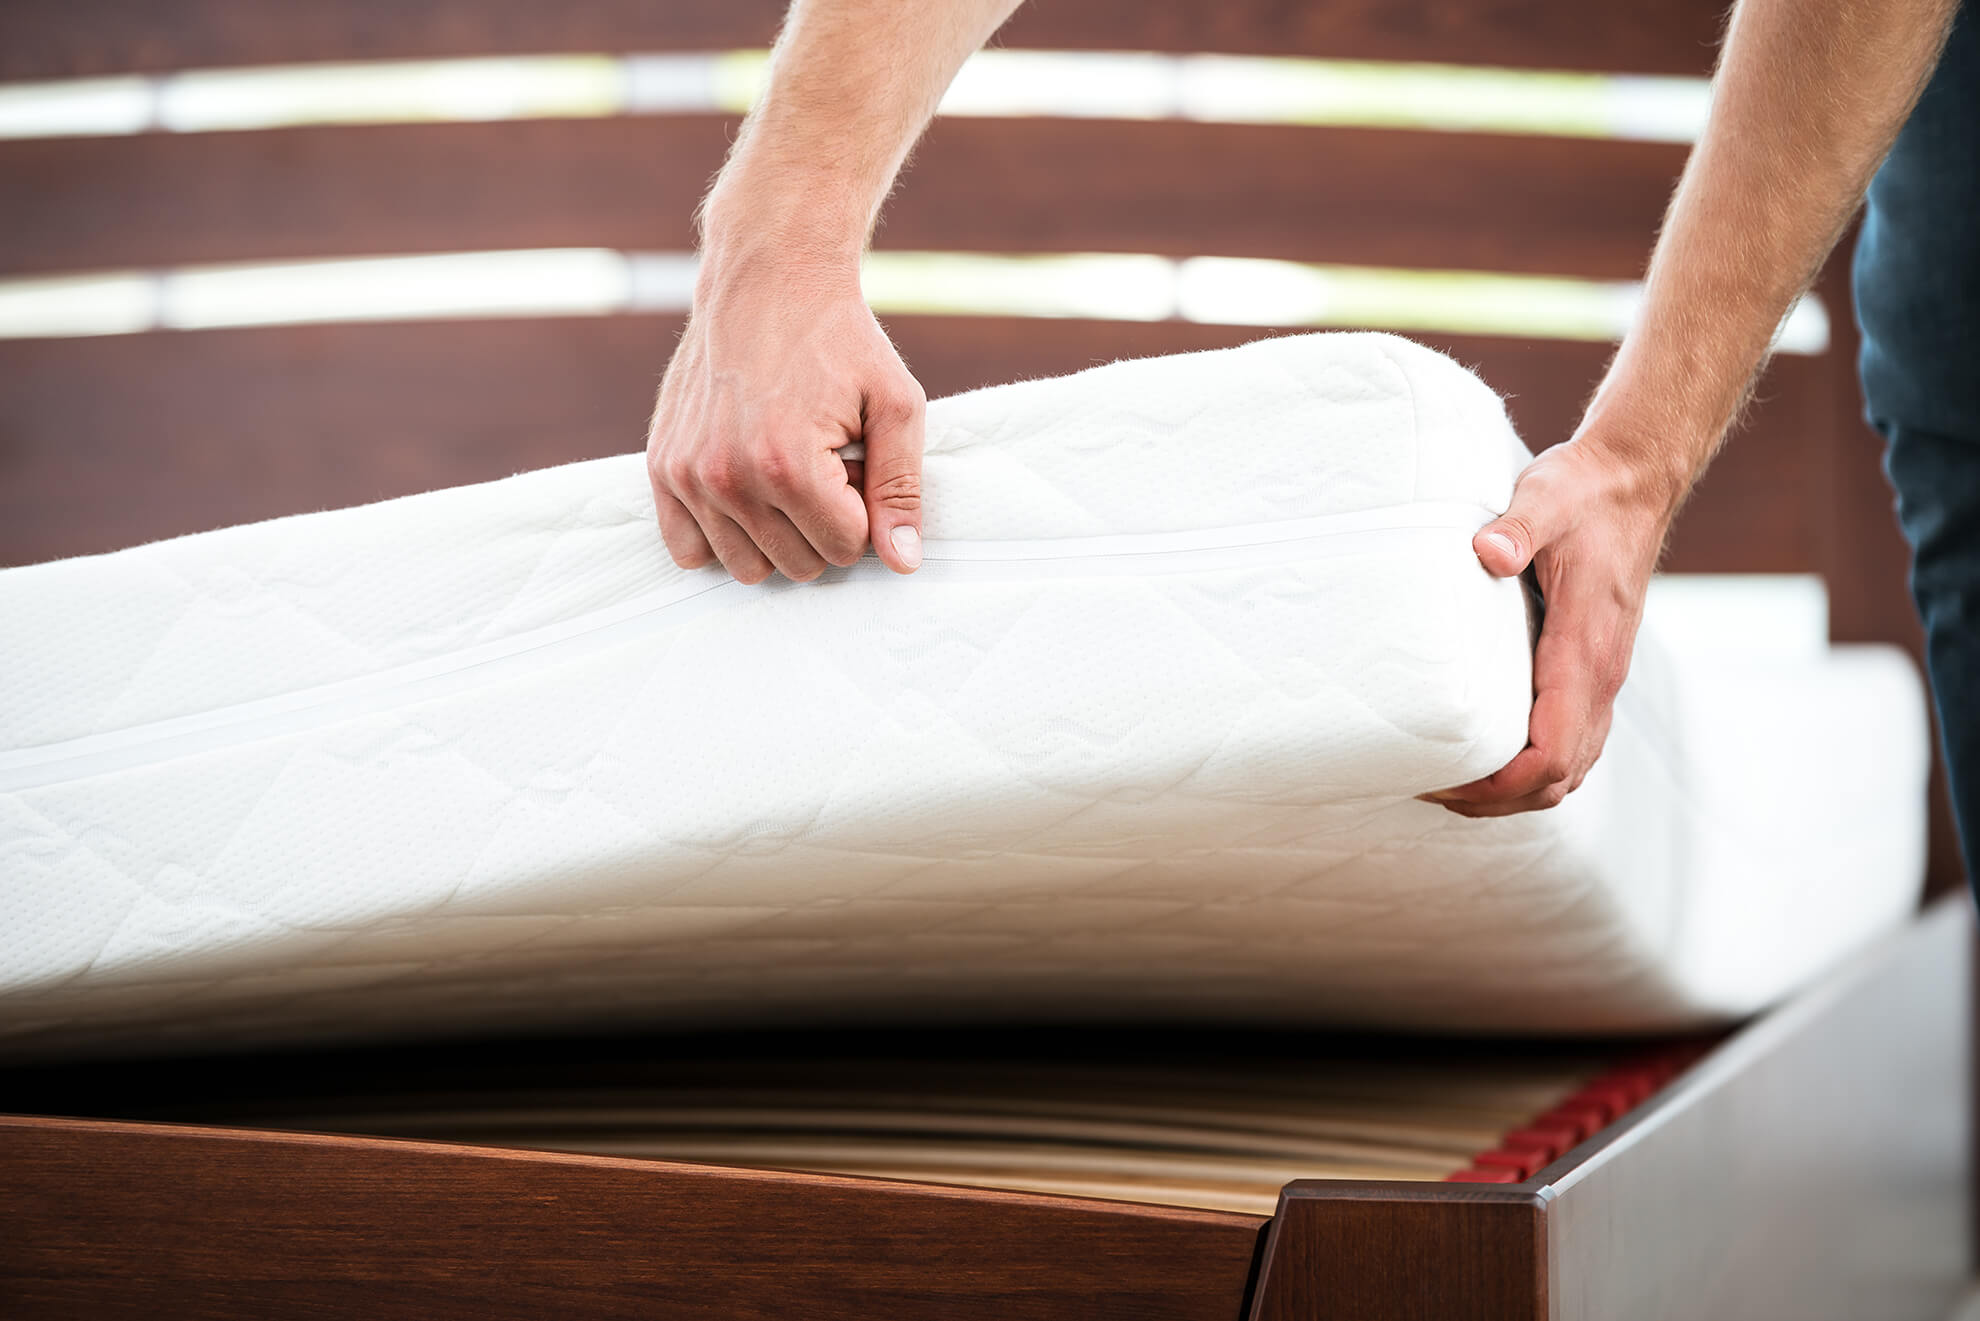 cleaning air mattress with bleach